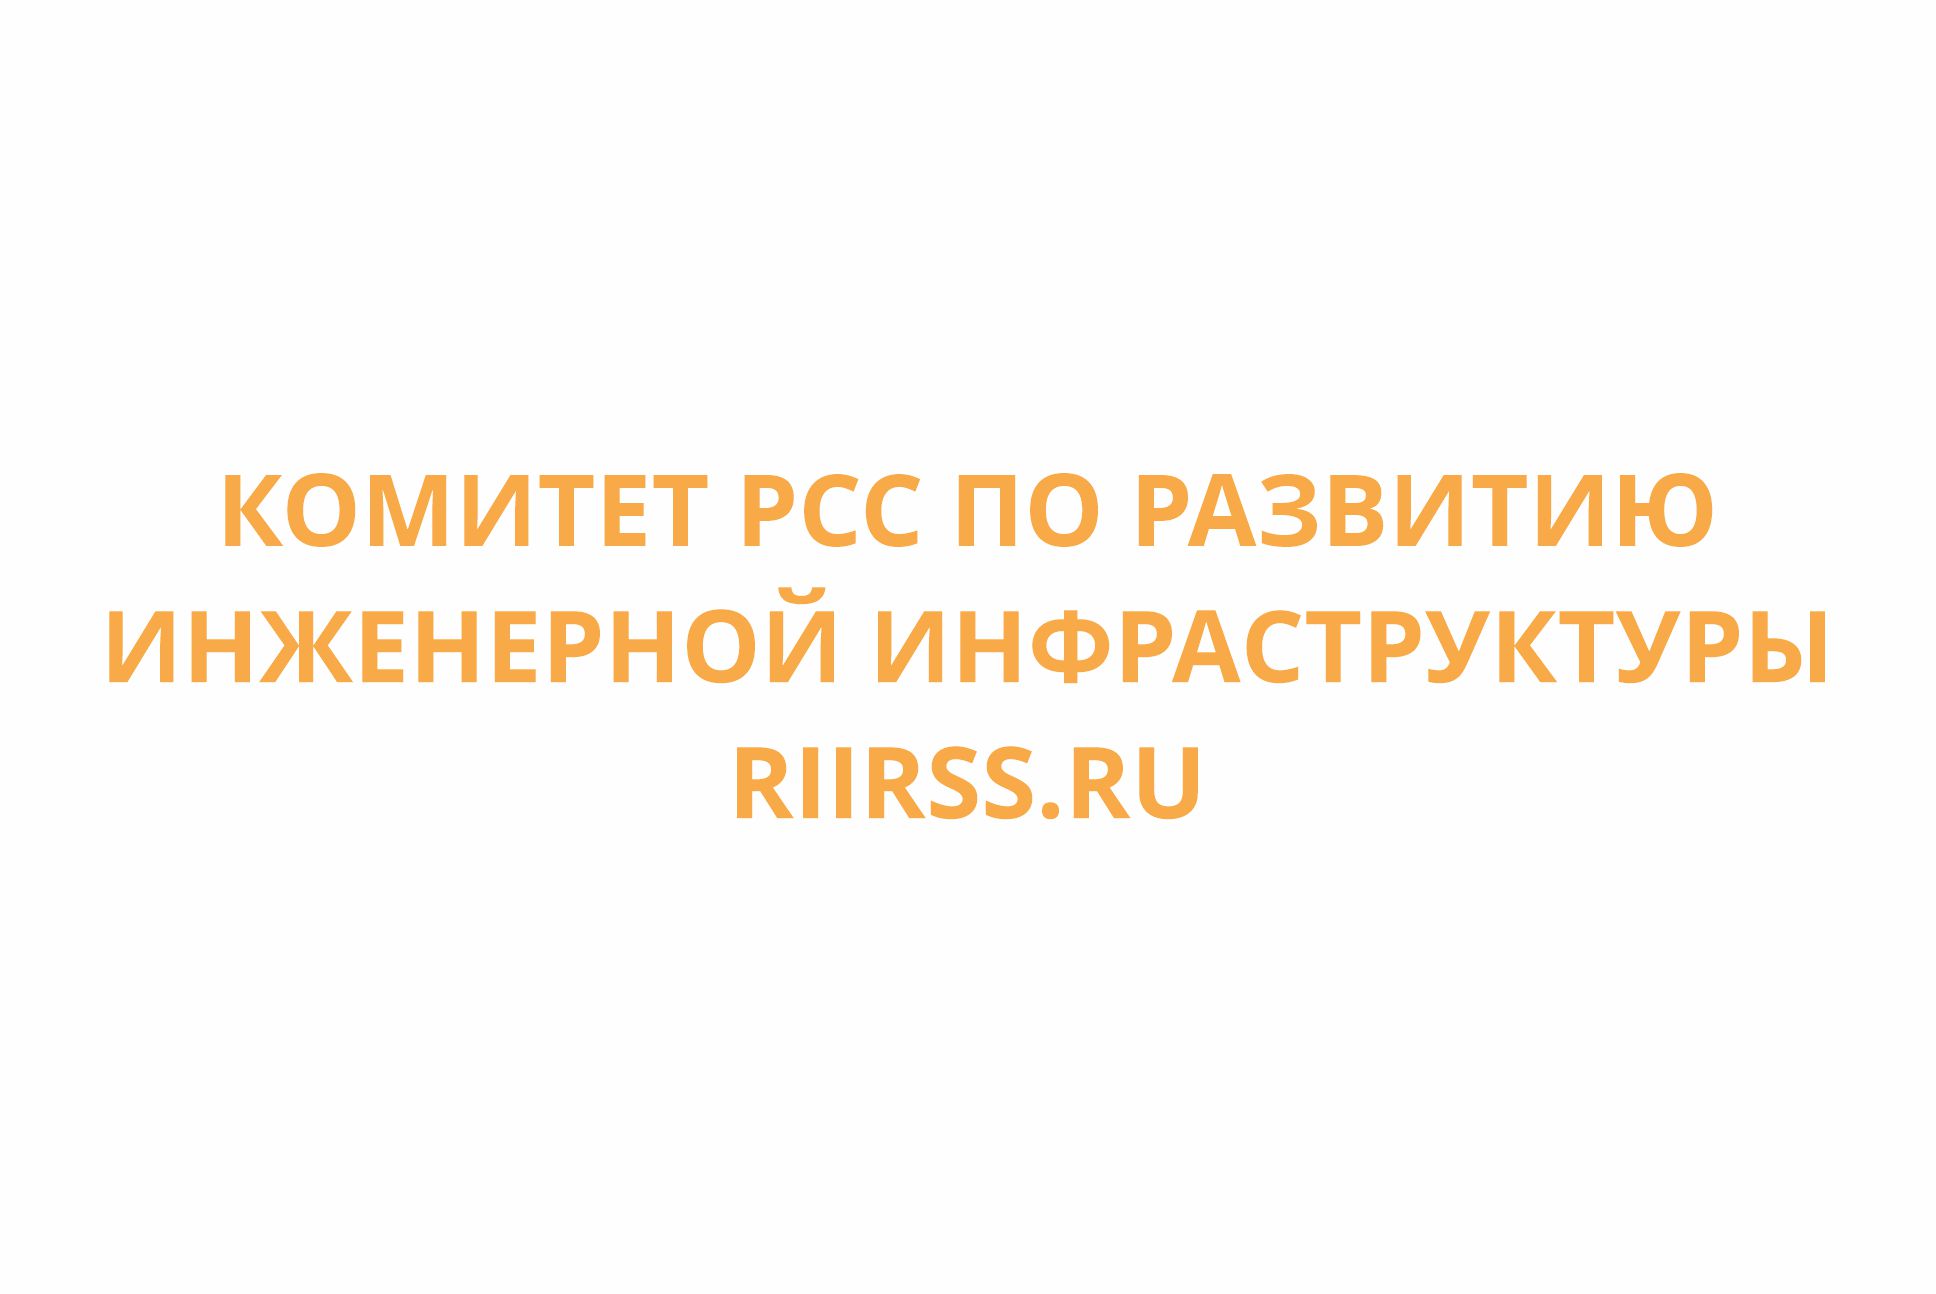 У Комитета РСС по развитию инженерной инфраструктуры появился свой сайт